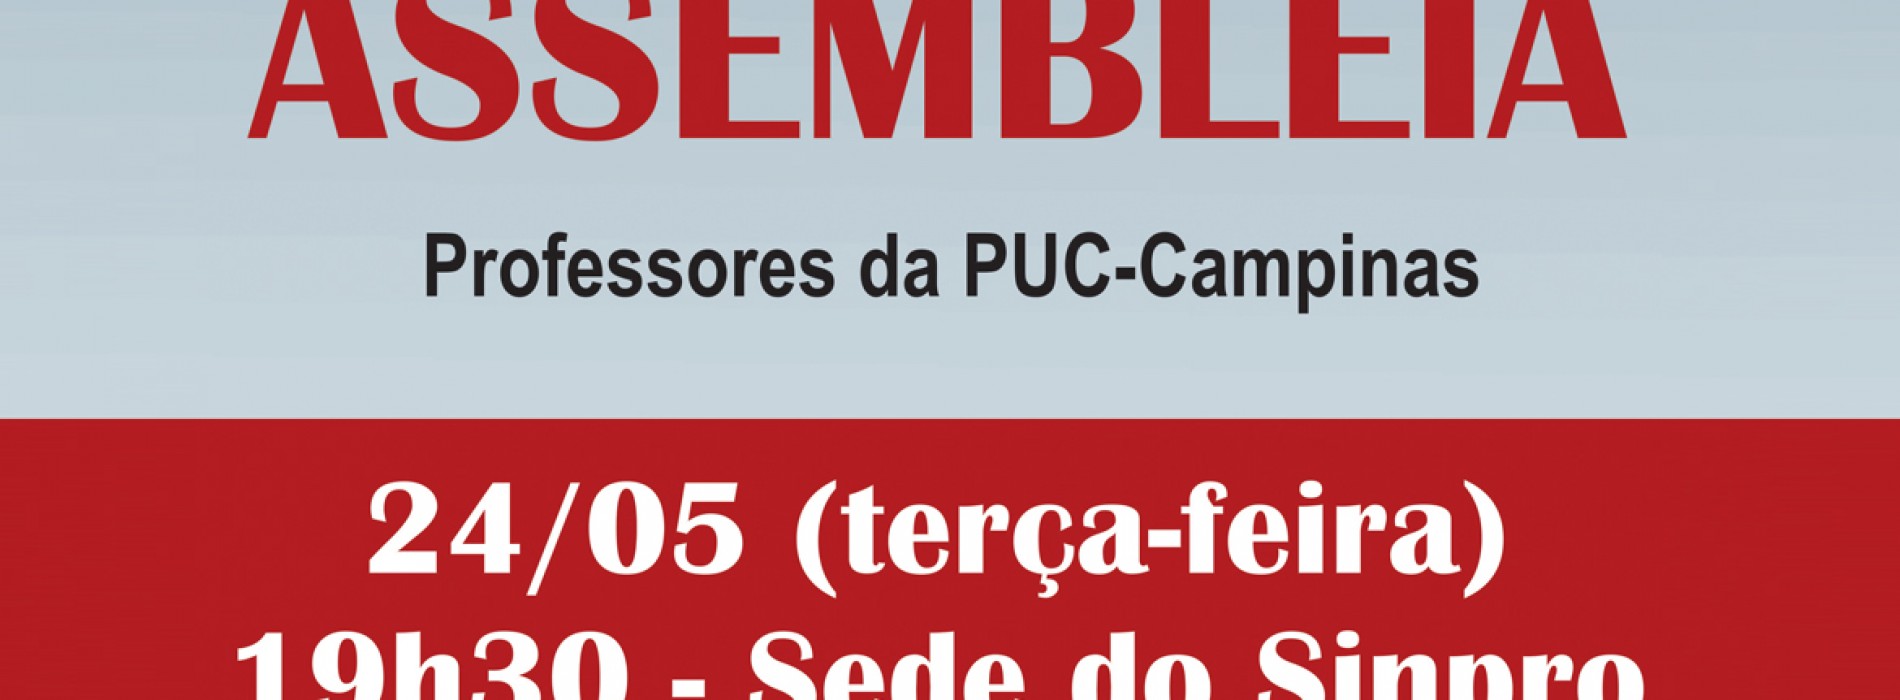 Entidades convocam assembleia dos professores da PUC-Campinas